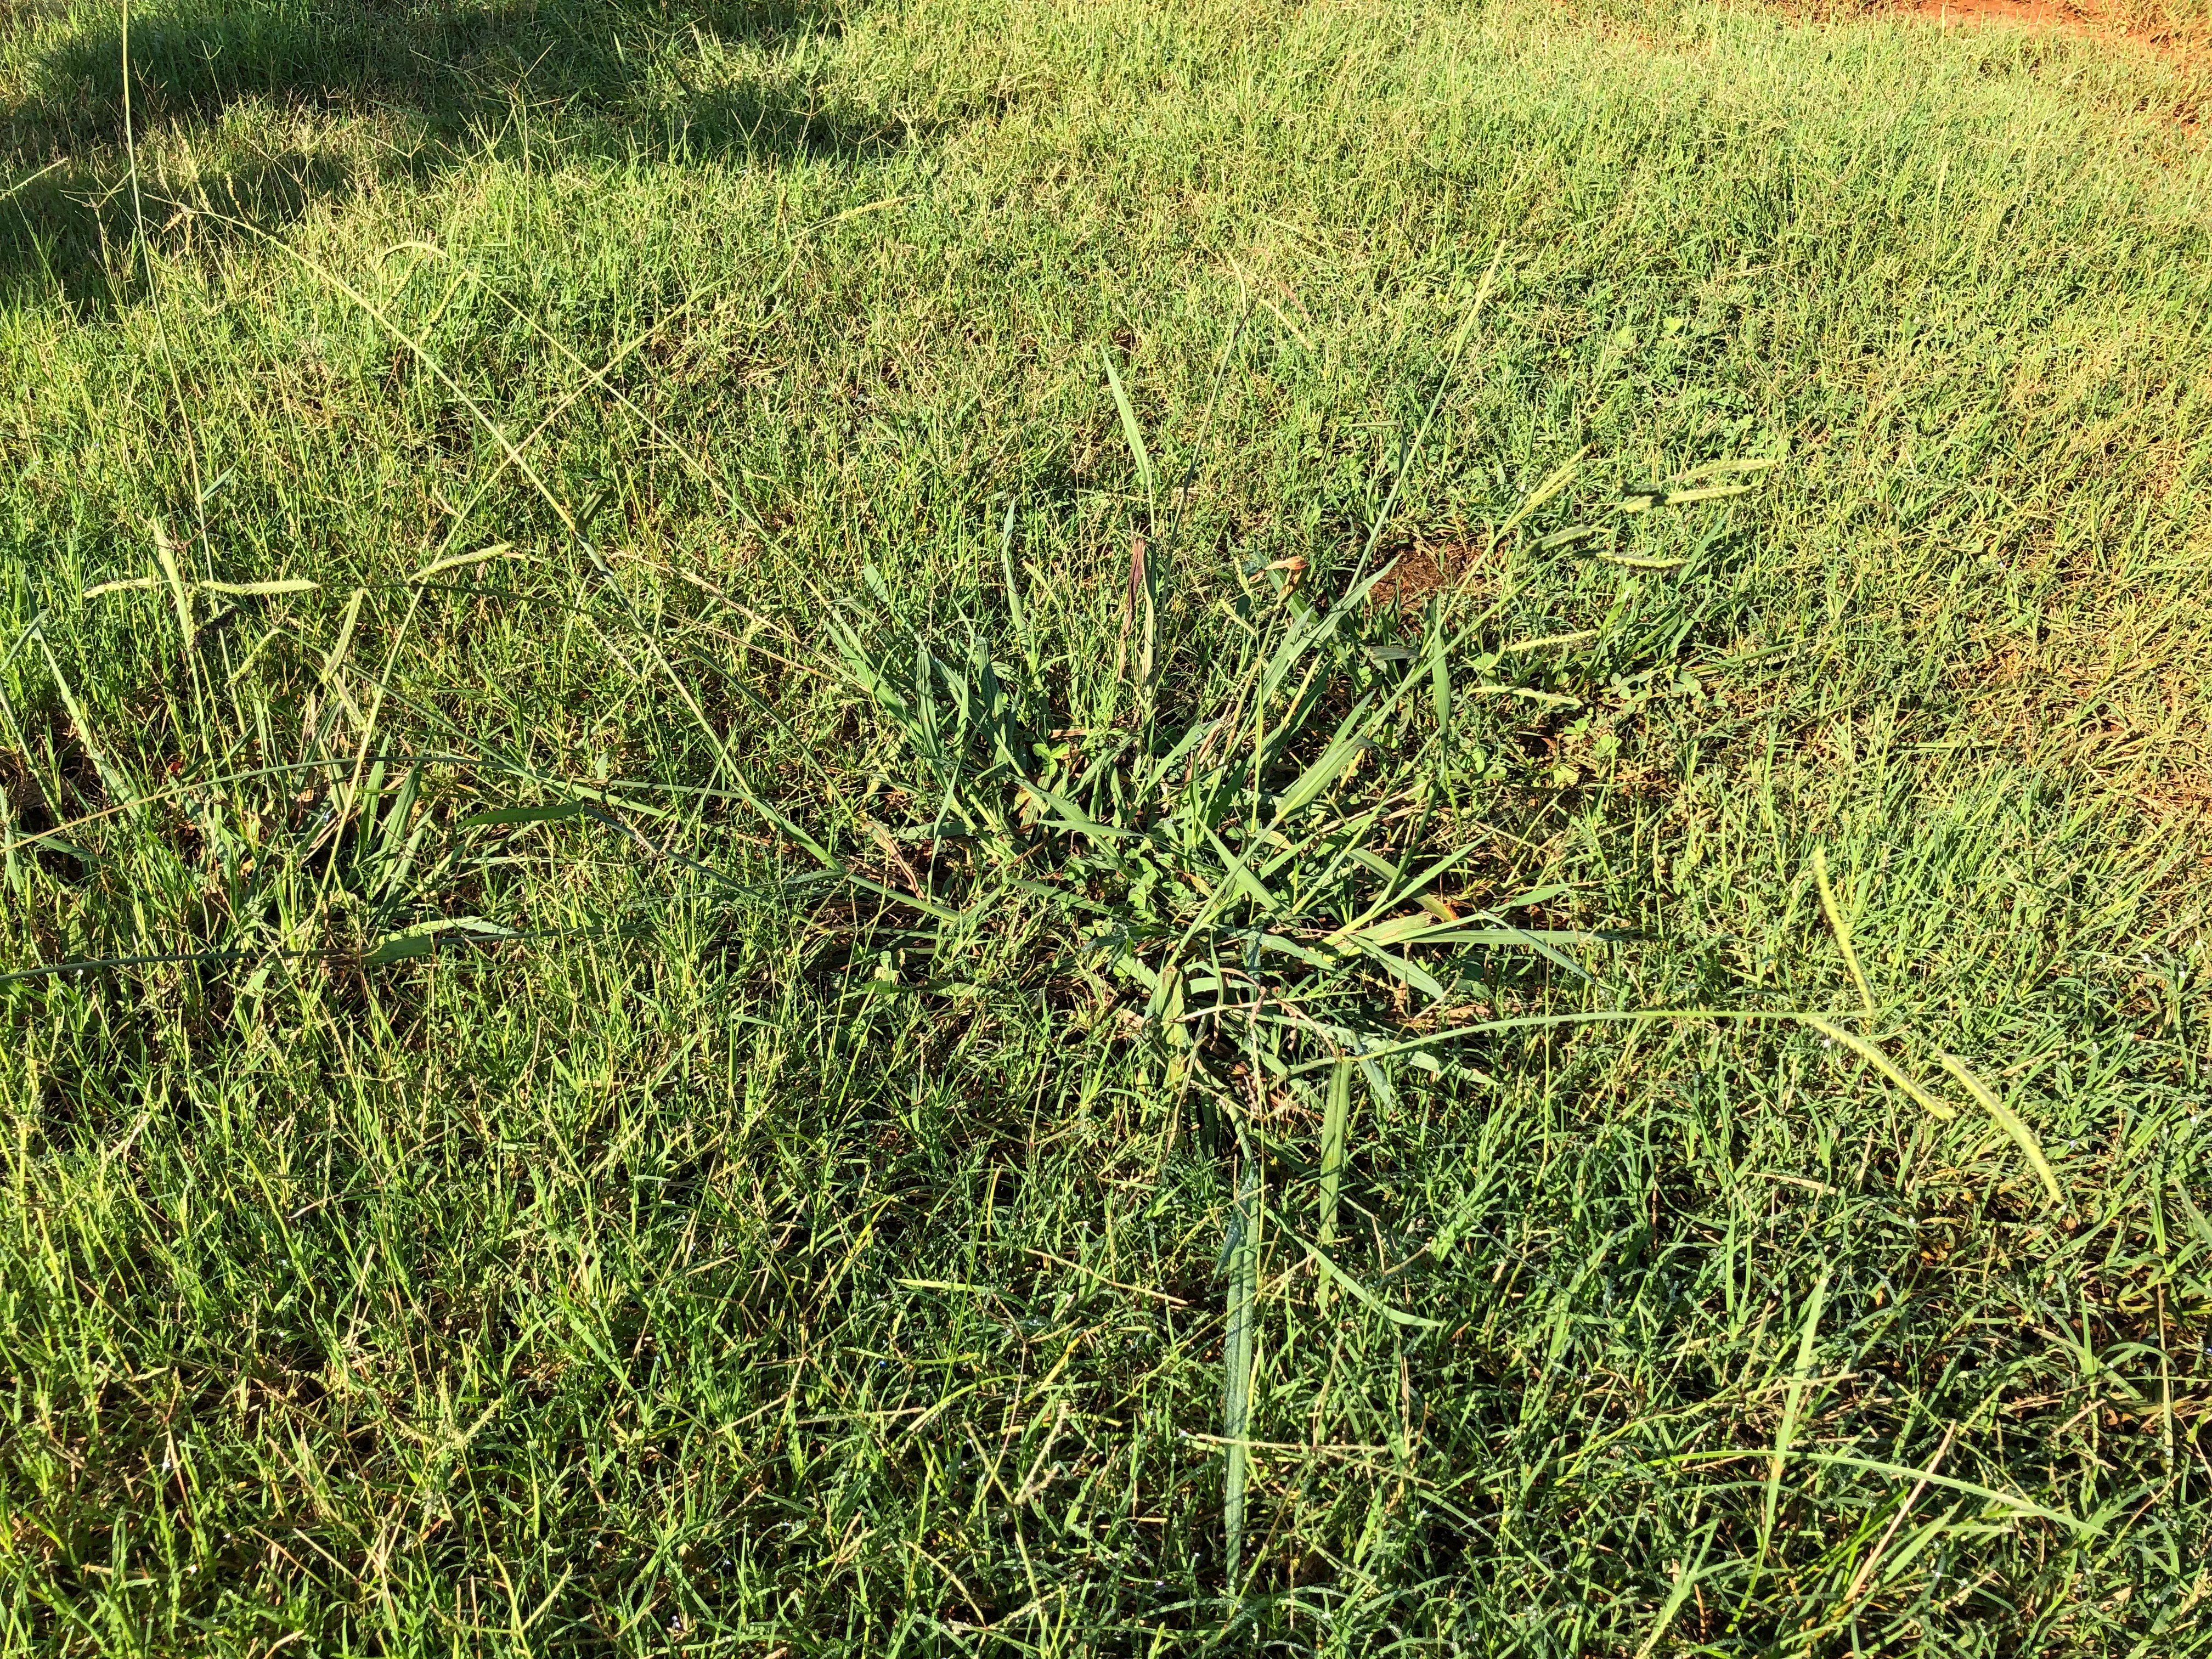 dallisgrass clump with long flower stalks